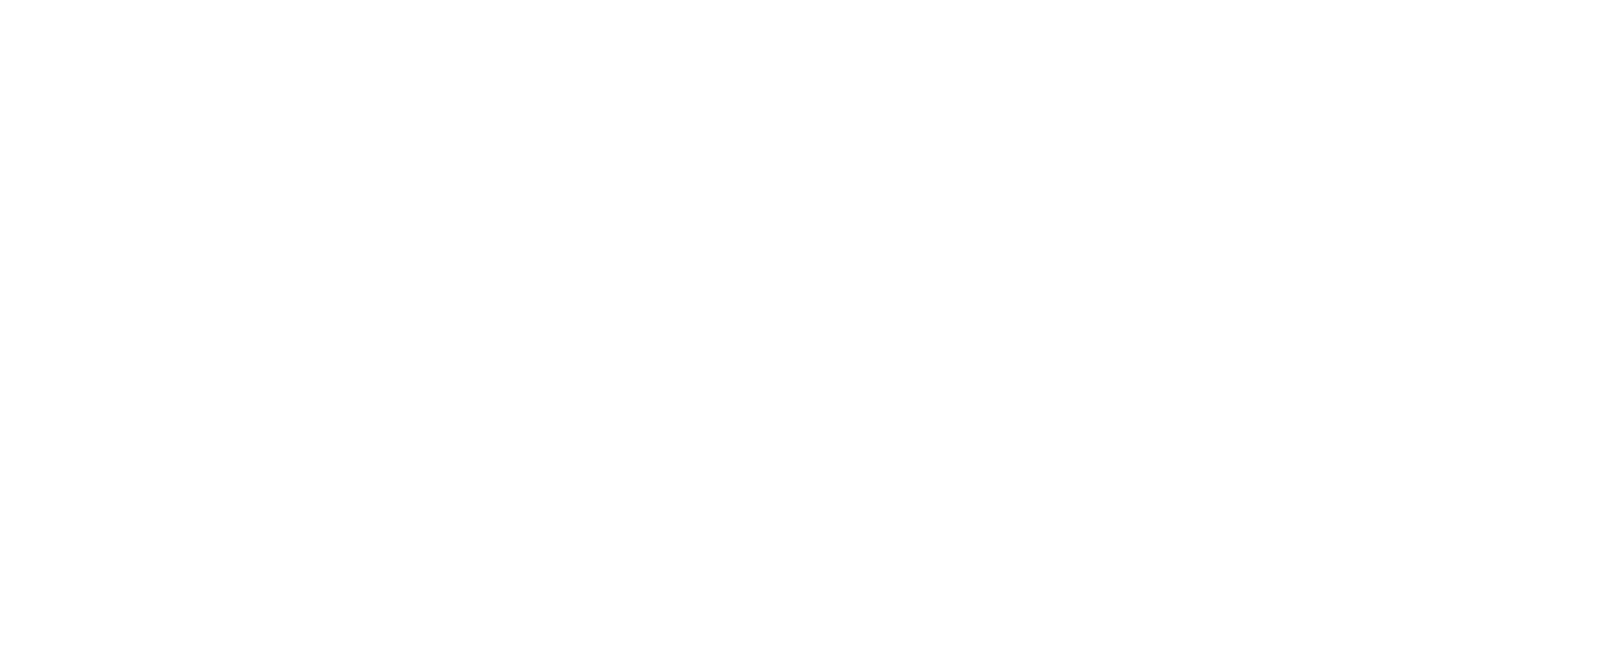 Siegfried Holding logo large for dark backgrounds (transparent PNG)